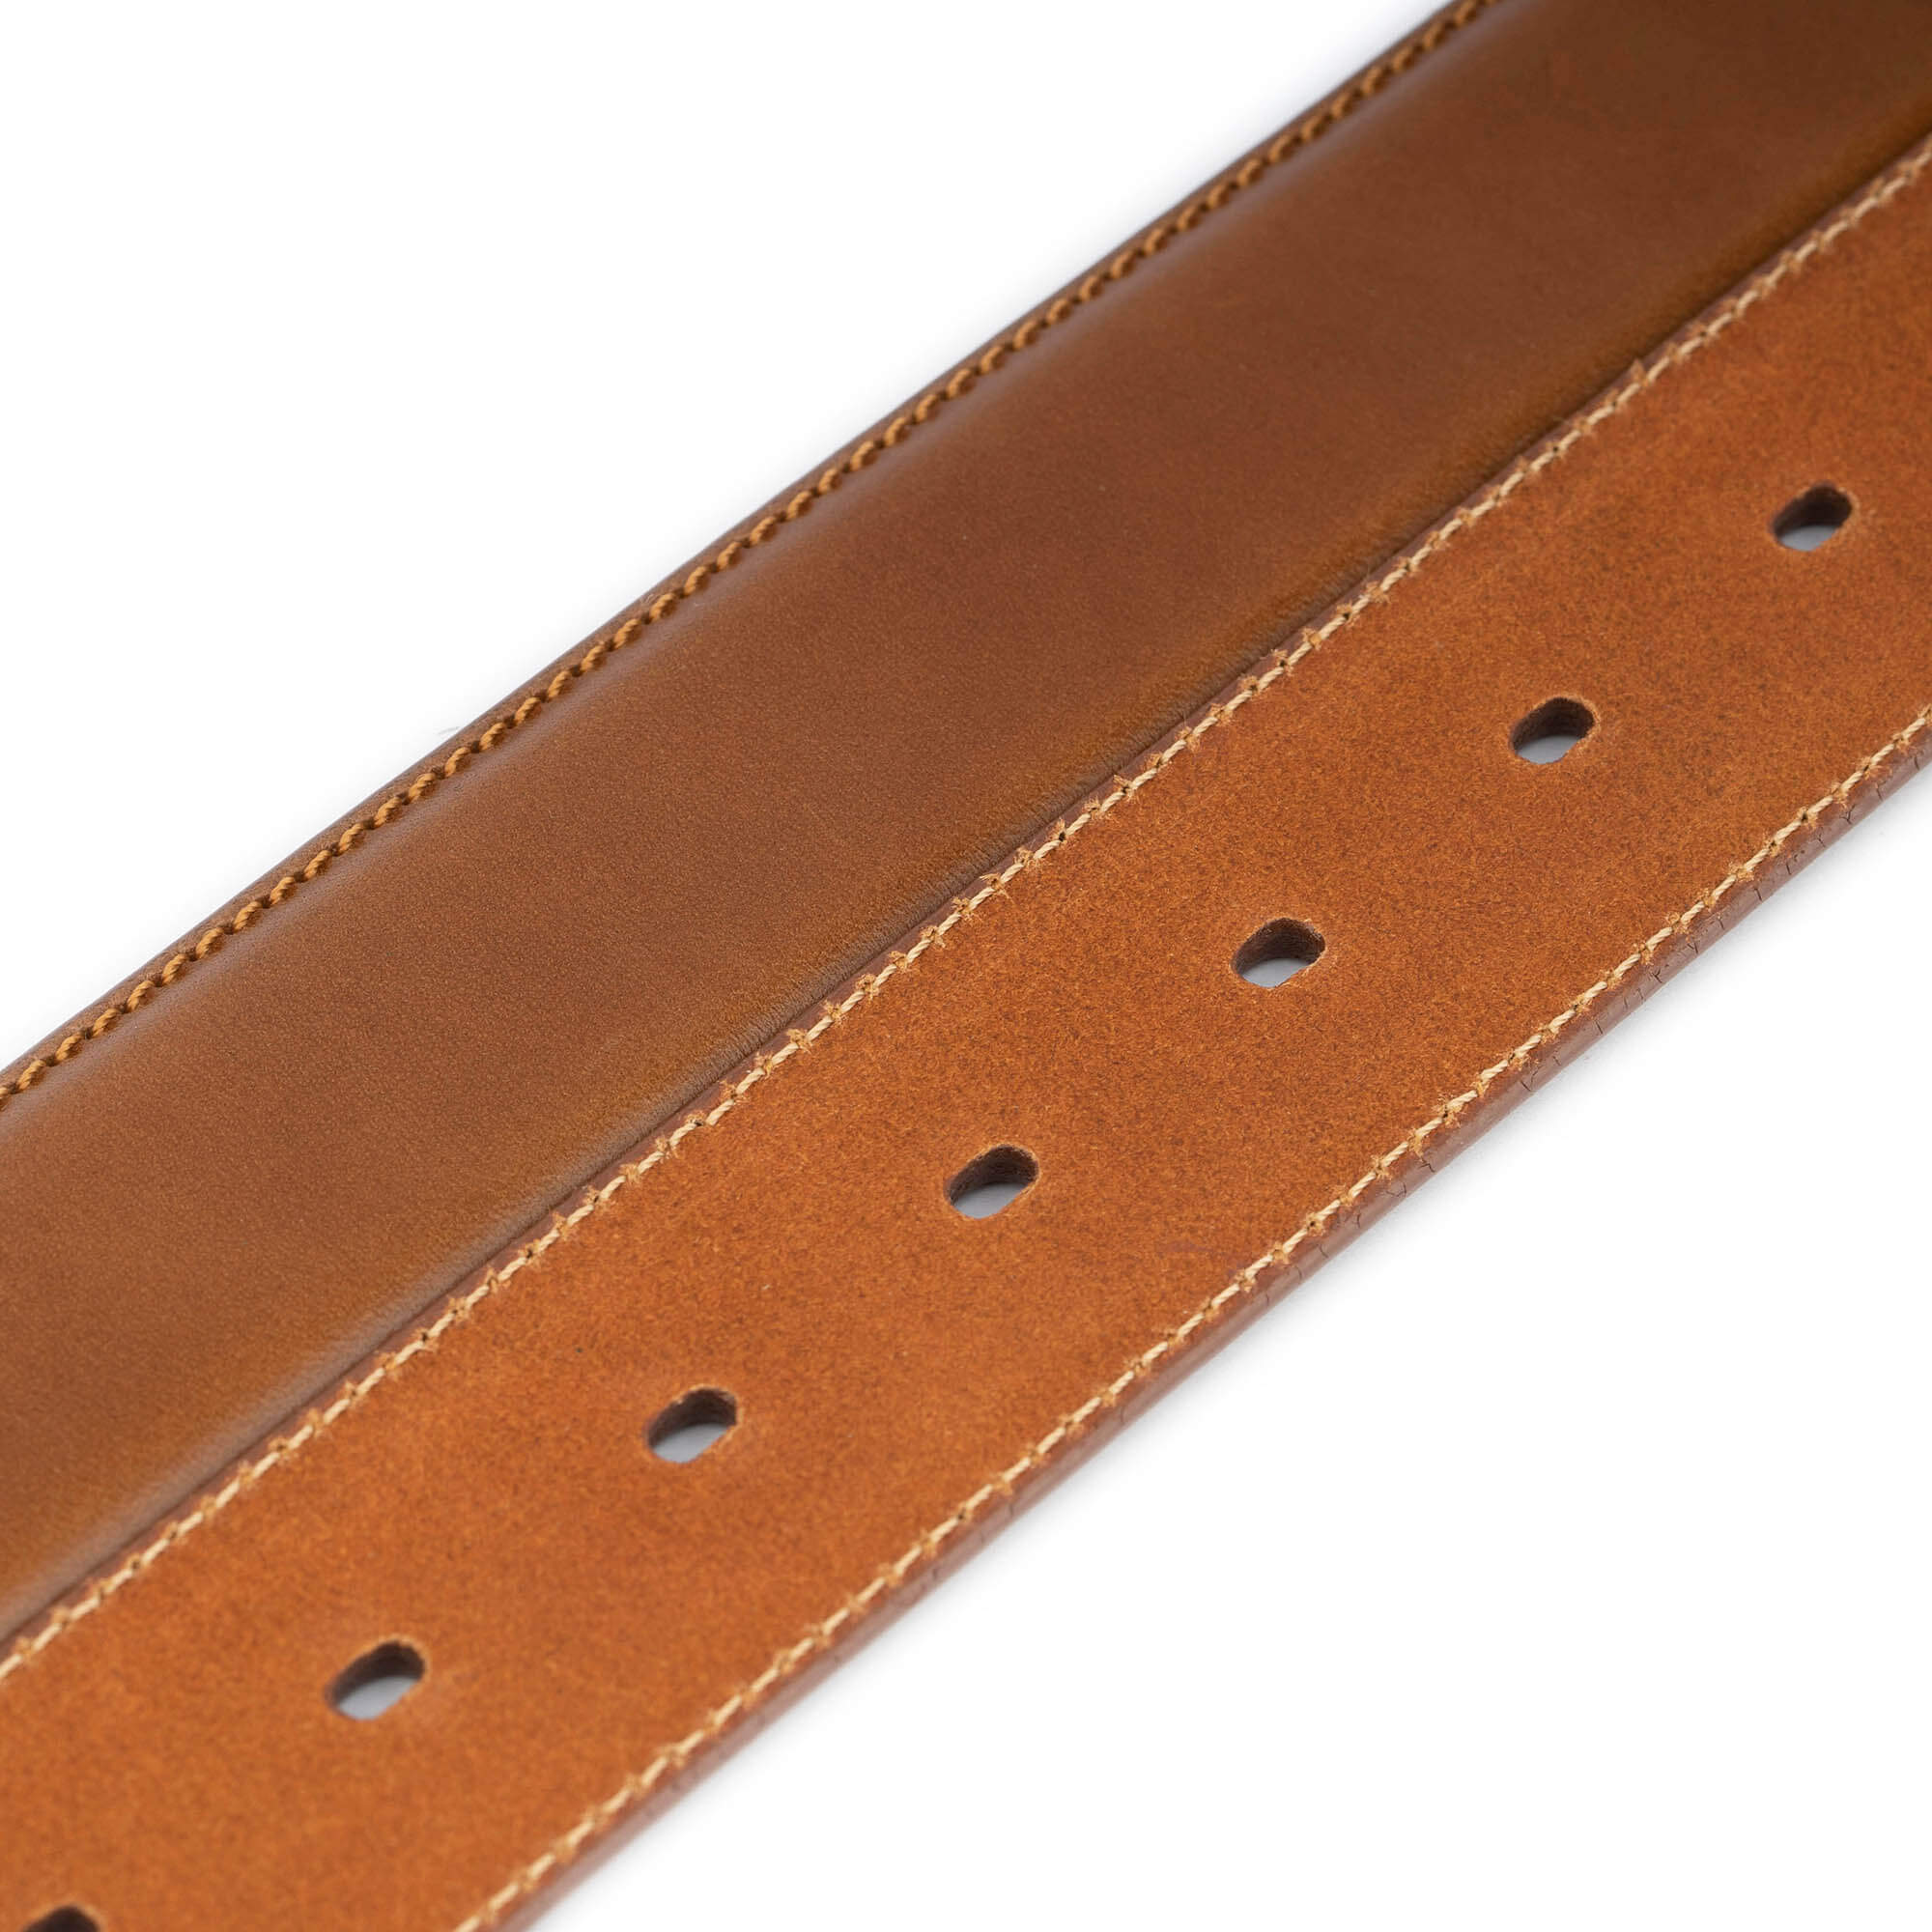 Buy Mens Belt Brown Leather - High Quality - LeatherBeltsOnline.com